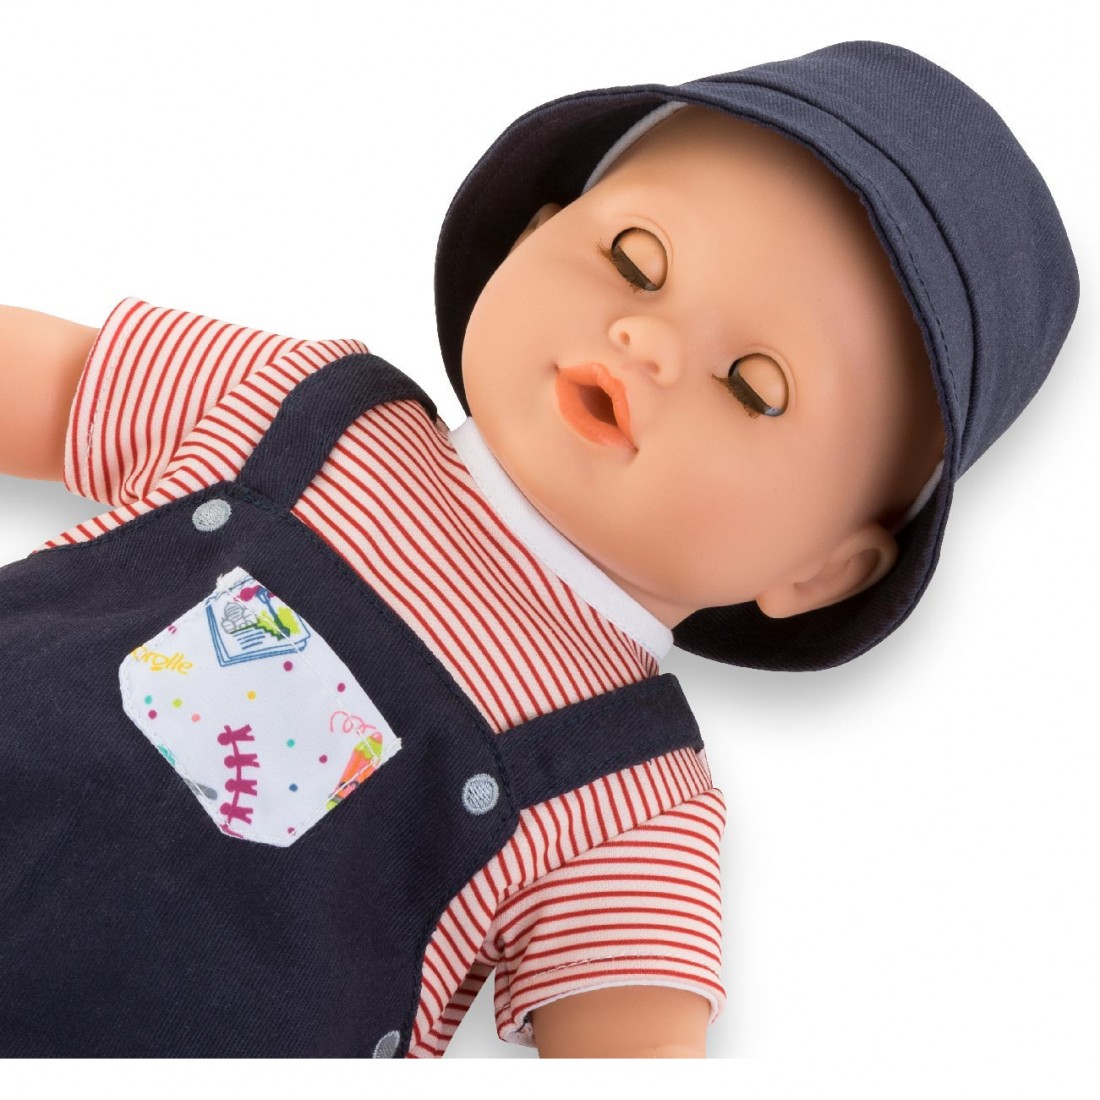 Porte bébé Corolle pour poupon 36 cm - Accessoire poupée - Achat